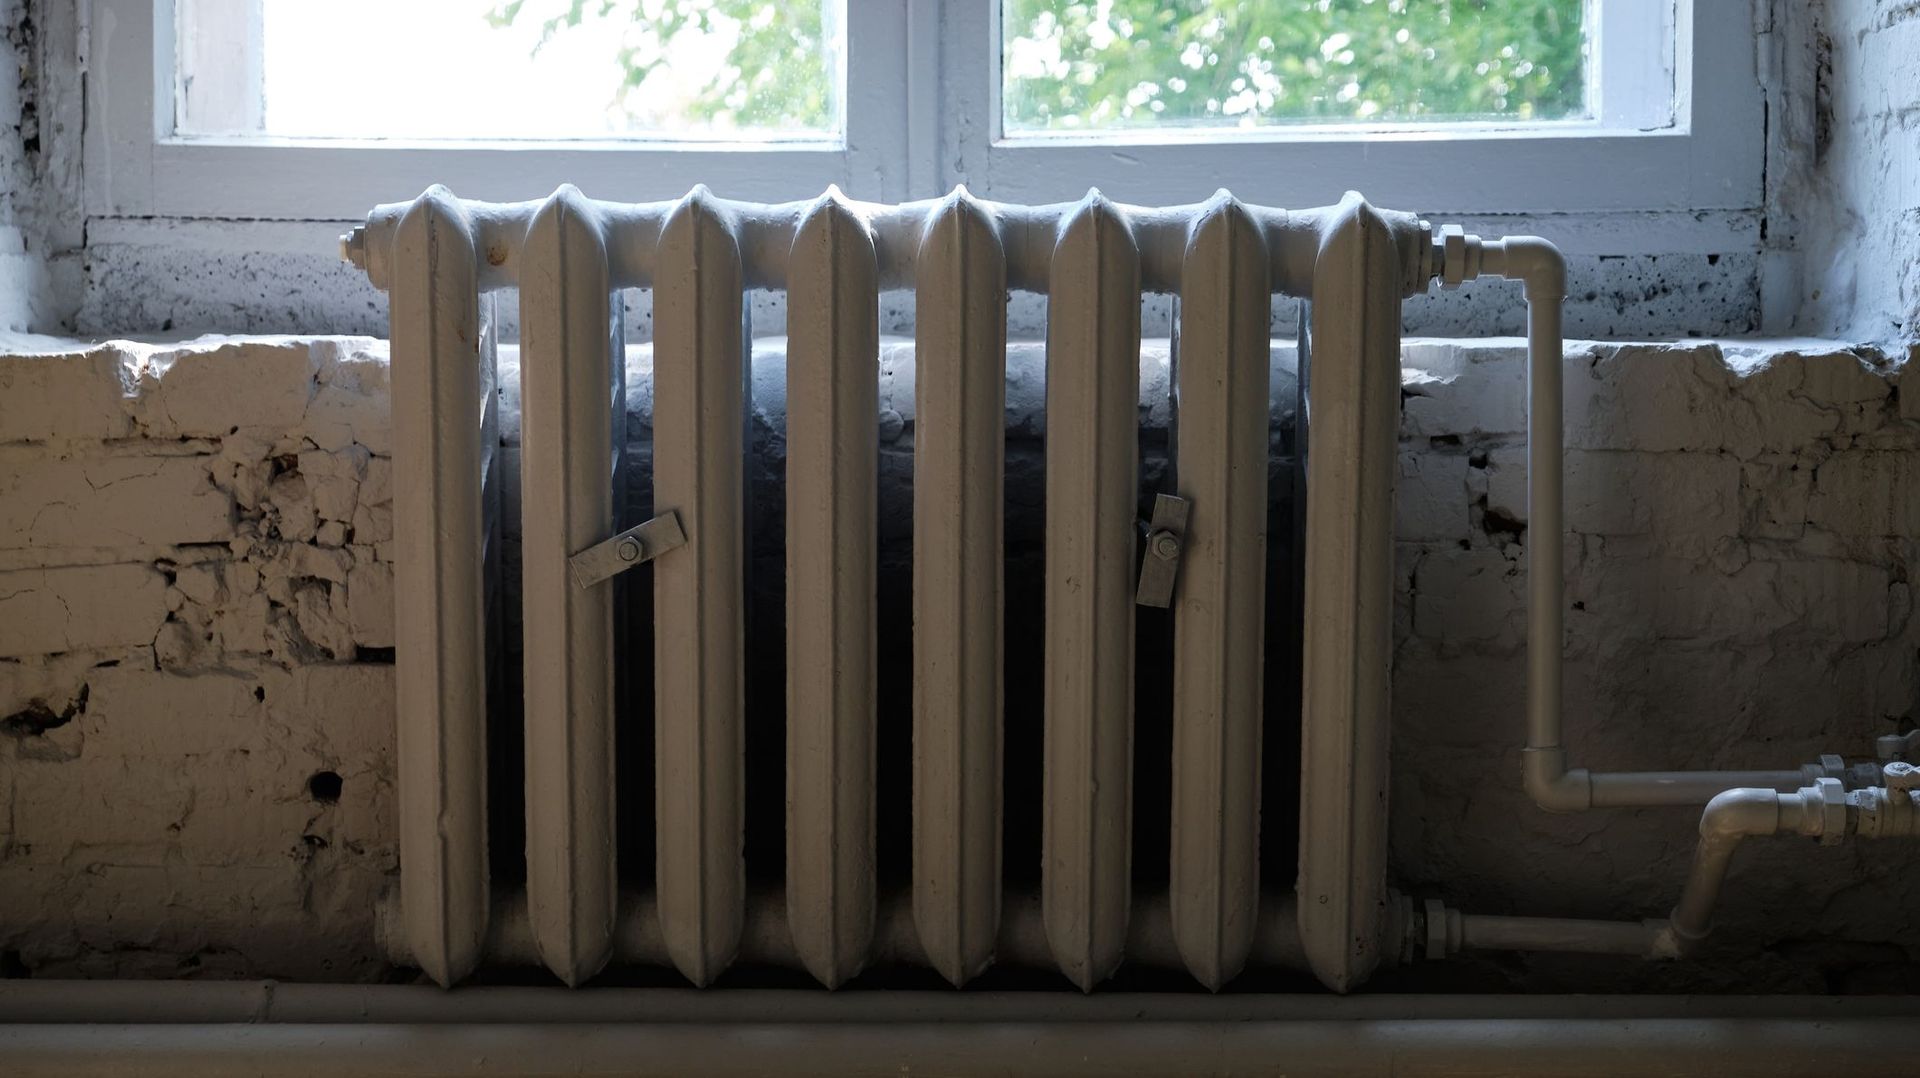 Plus de 8% des travailleurs pauvres belges ne peuvent plus chauffer leur maison à cause du prix de l'énergie